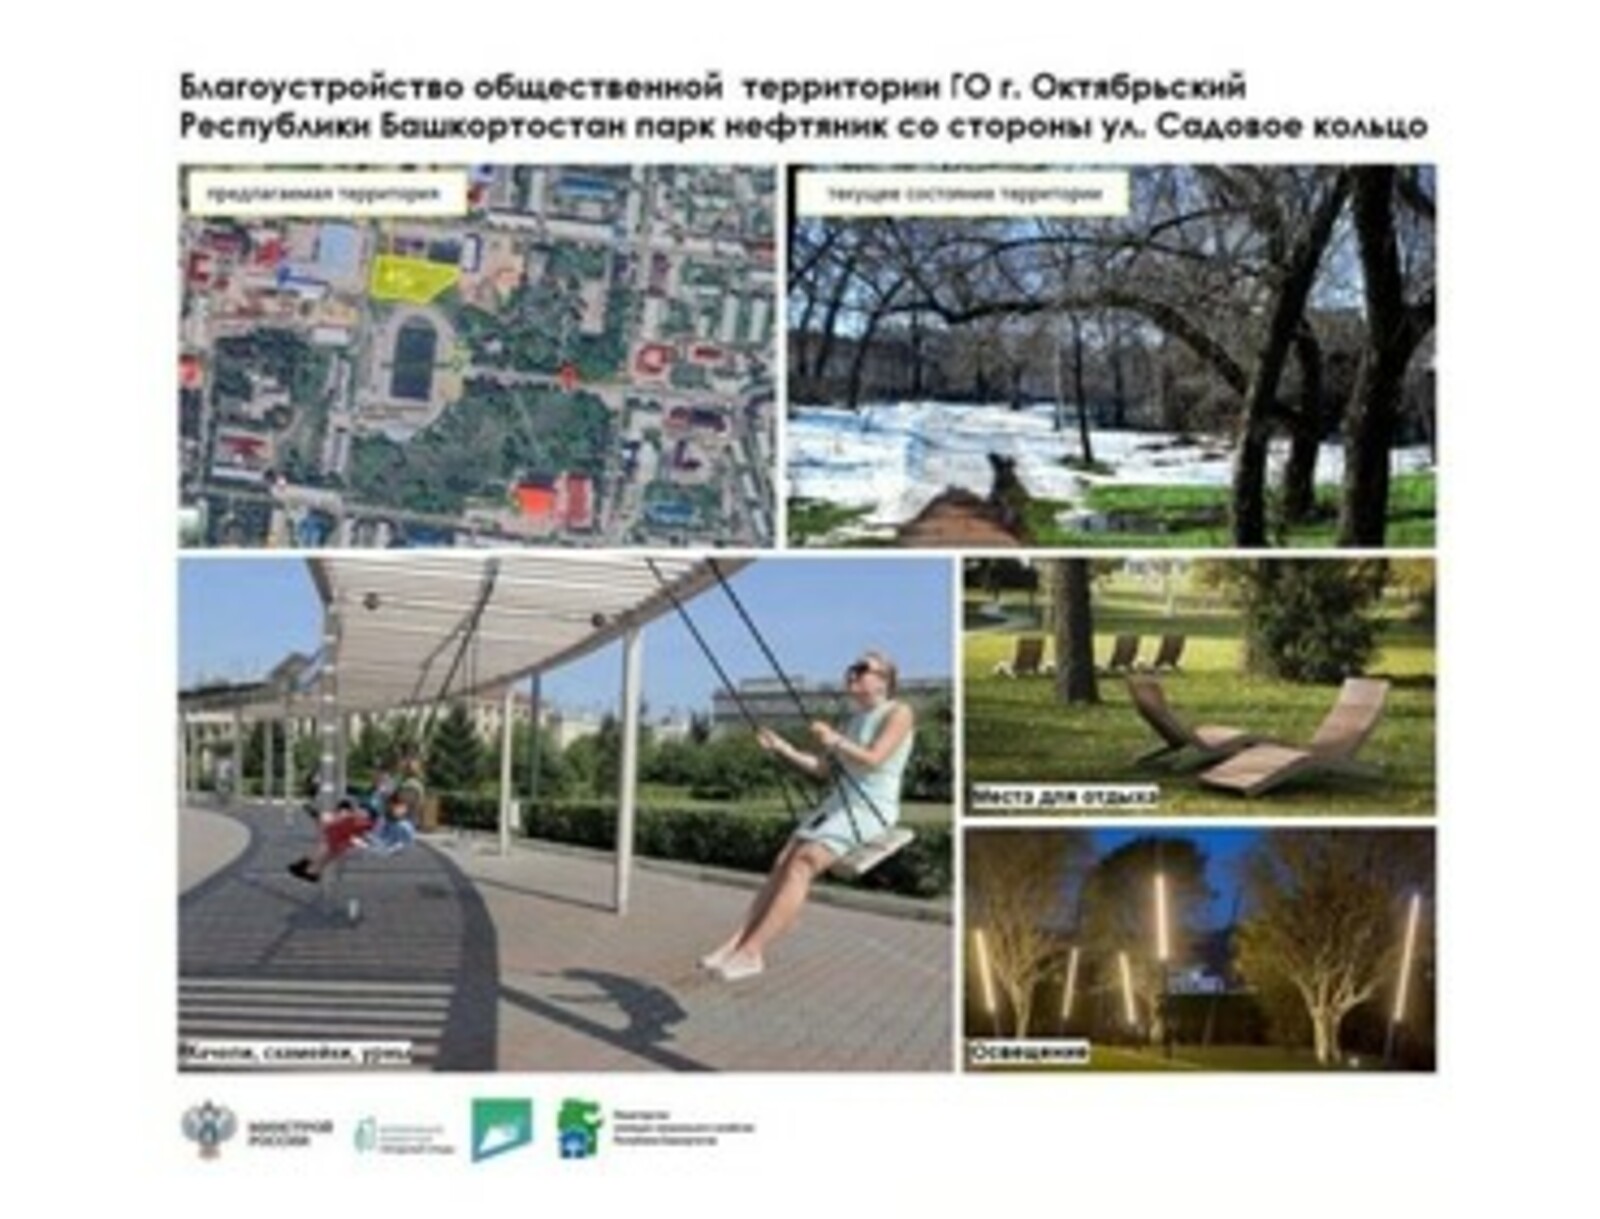 В городе Октябрьском парк Нефтяник лидирует в голосовании за объекты благоустройства в 2025 году